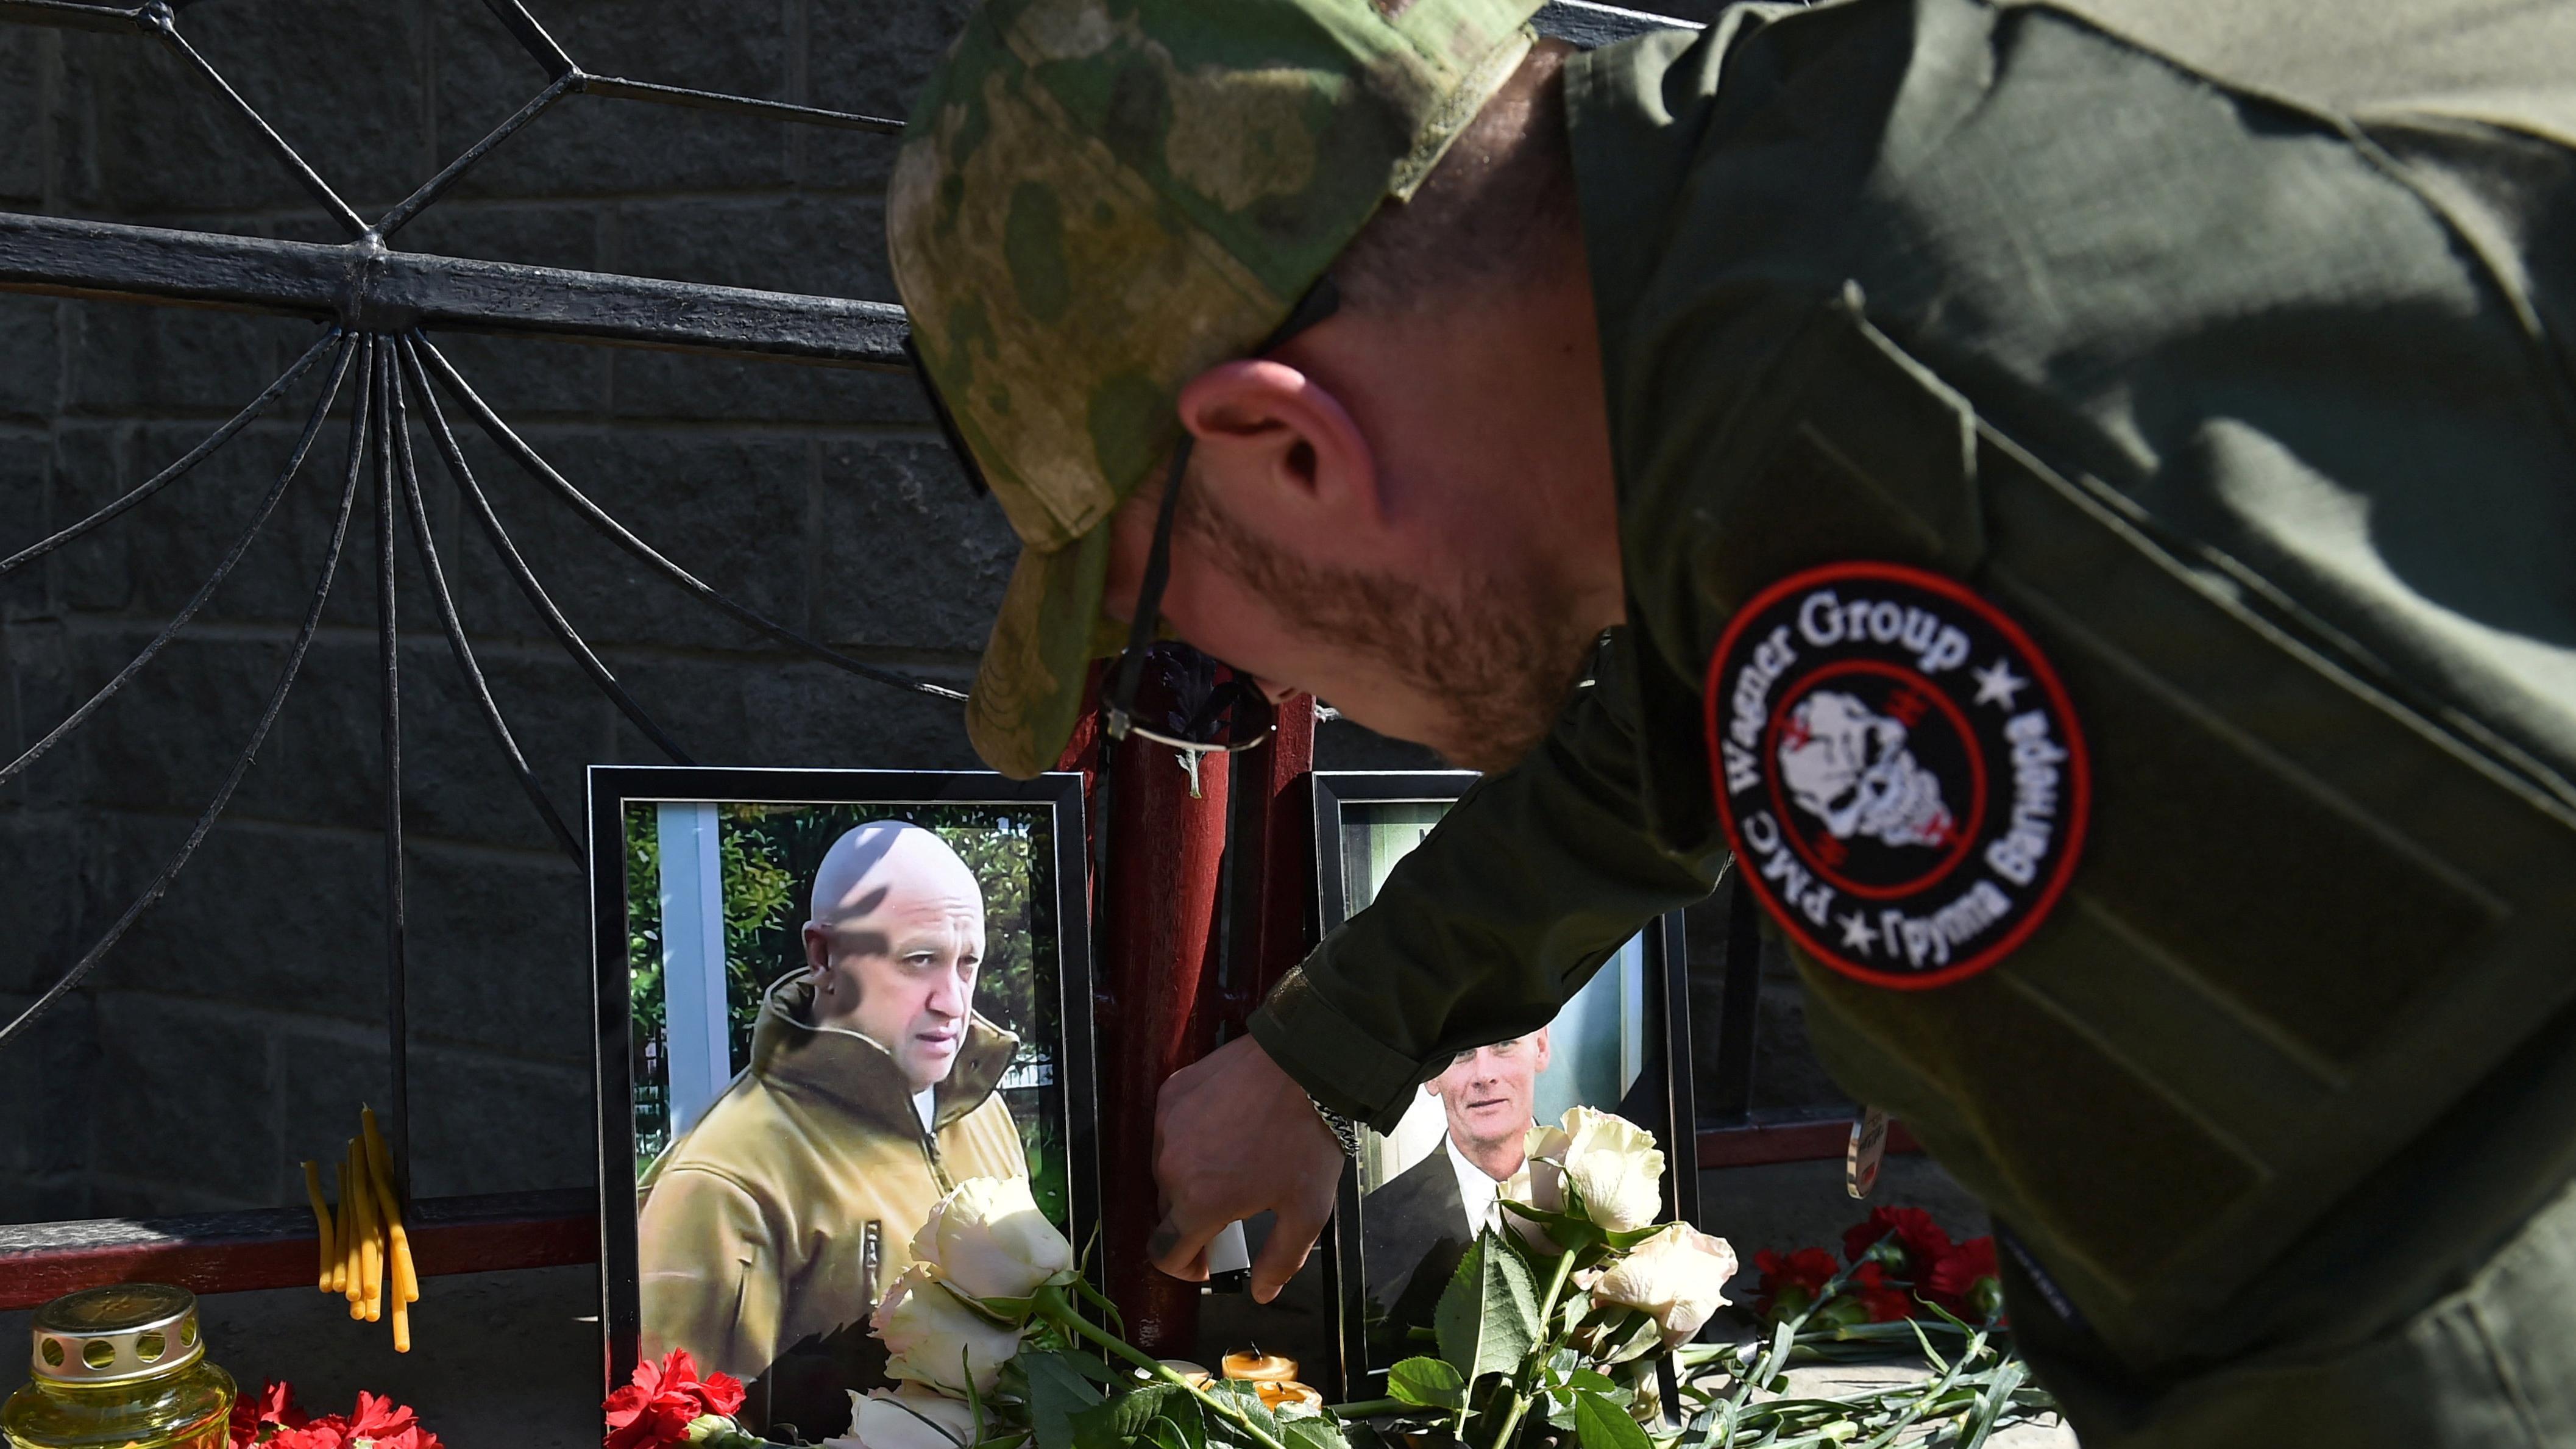 مقاتل من مجموعة فاغنر يضيء شمعة في نصب تذكاري مؤقت به صور لرئيس المرتزقة الروسي يفغيني بريغوجين